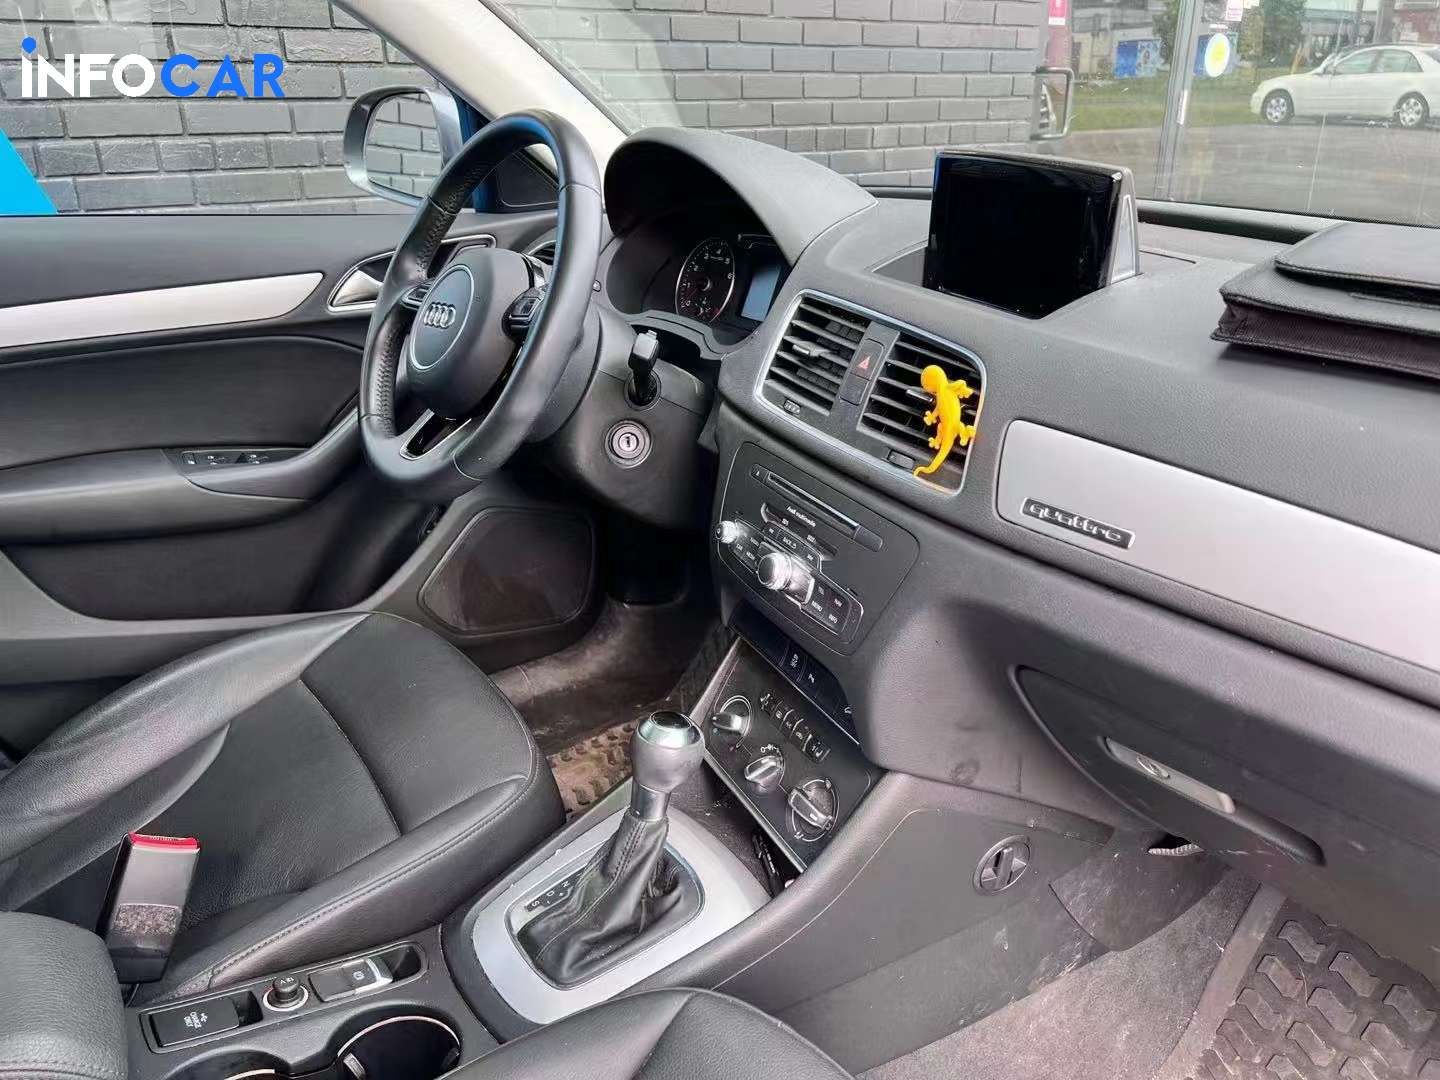 2018 Audi Q3 Kmort - INFOCAR - Toronto Auto Trading Platform